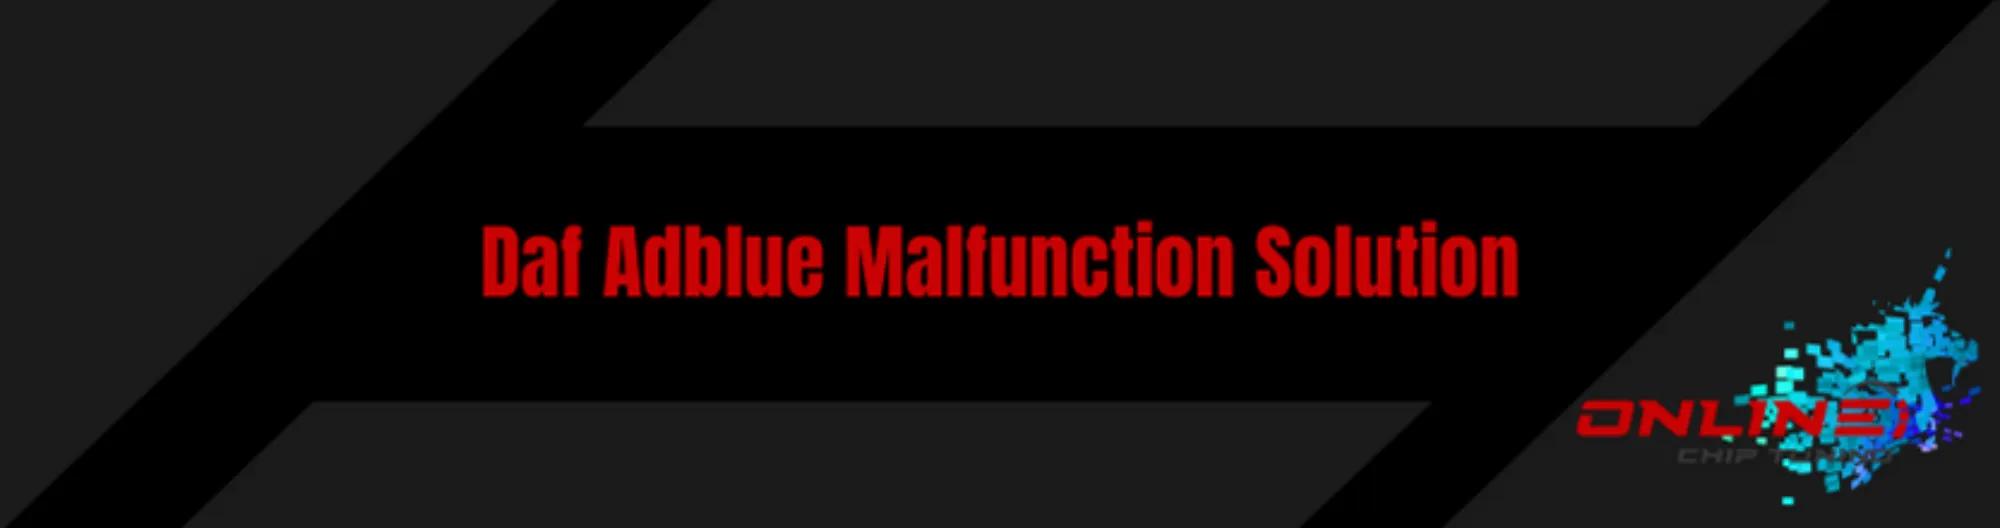 Daf Adblue Malfunction Solution